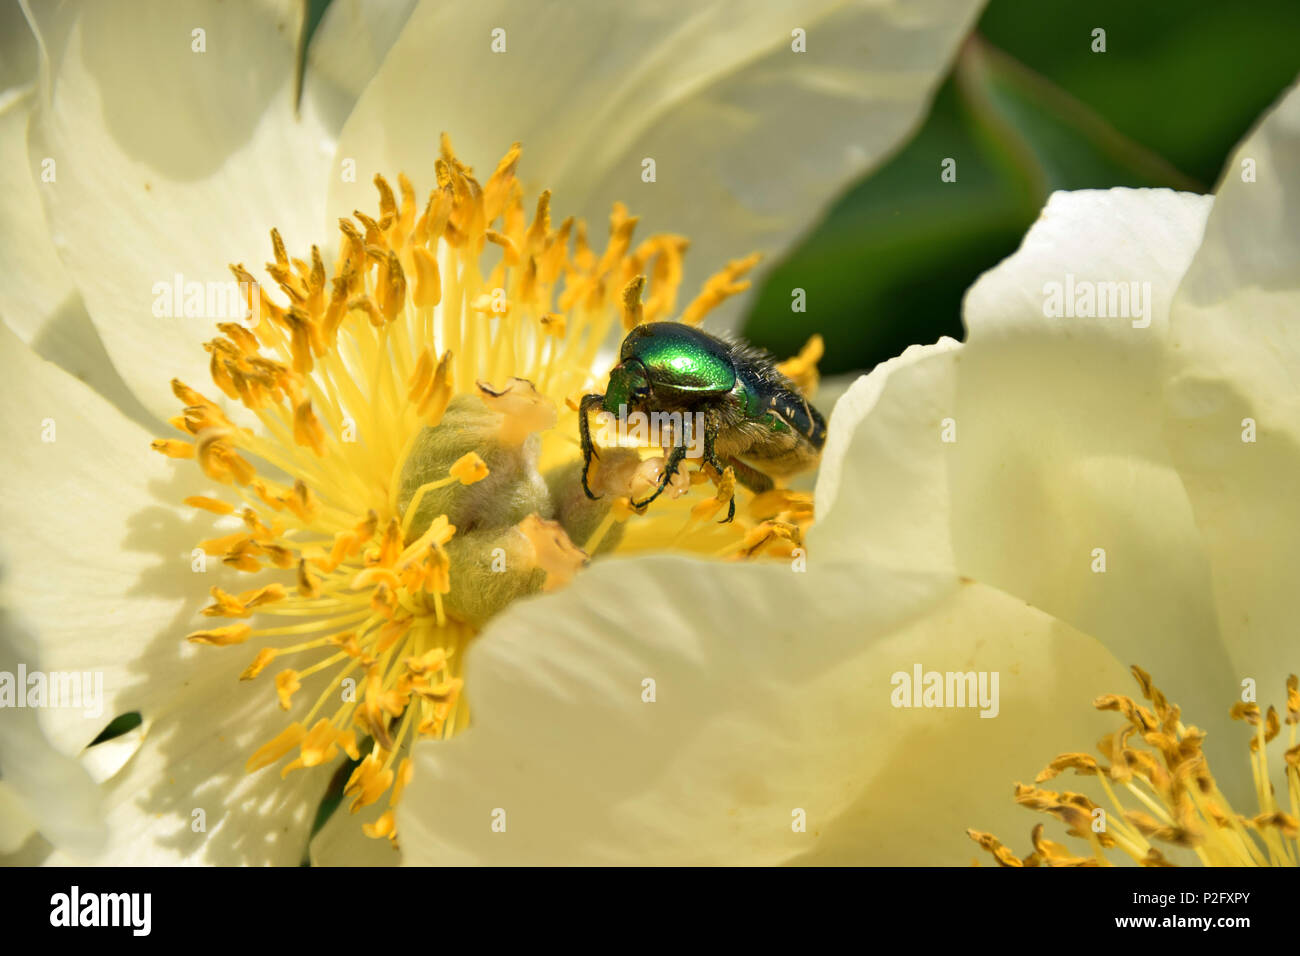 Päonie blühen im Frühling mit protaetia speciosissma Käfer auf it, golden schimmernde Käfer in blühende Päonie Stockfoto